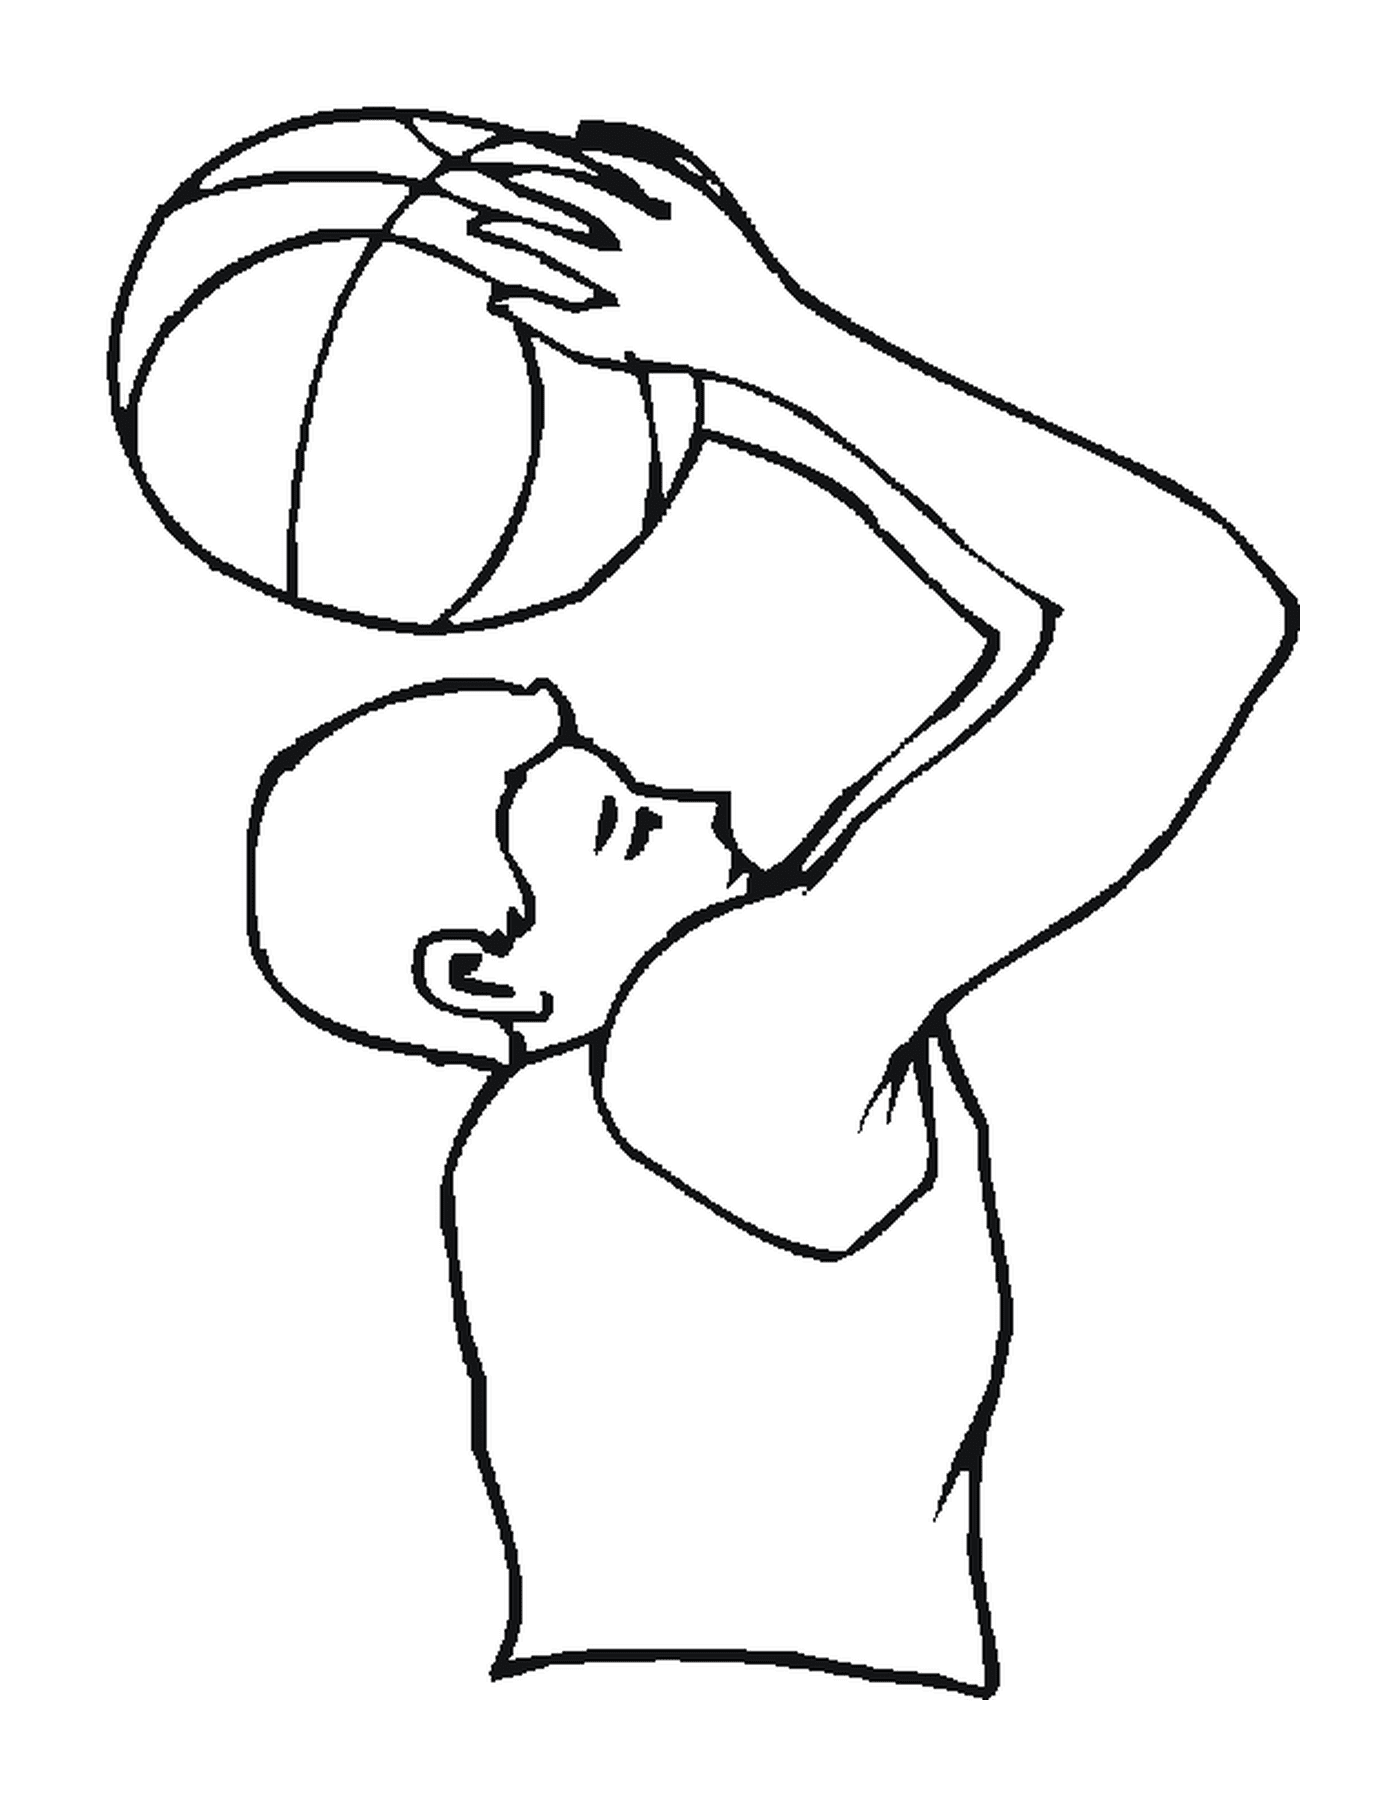  Un hombre sostiene una pelota de baloncesto 